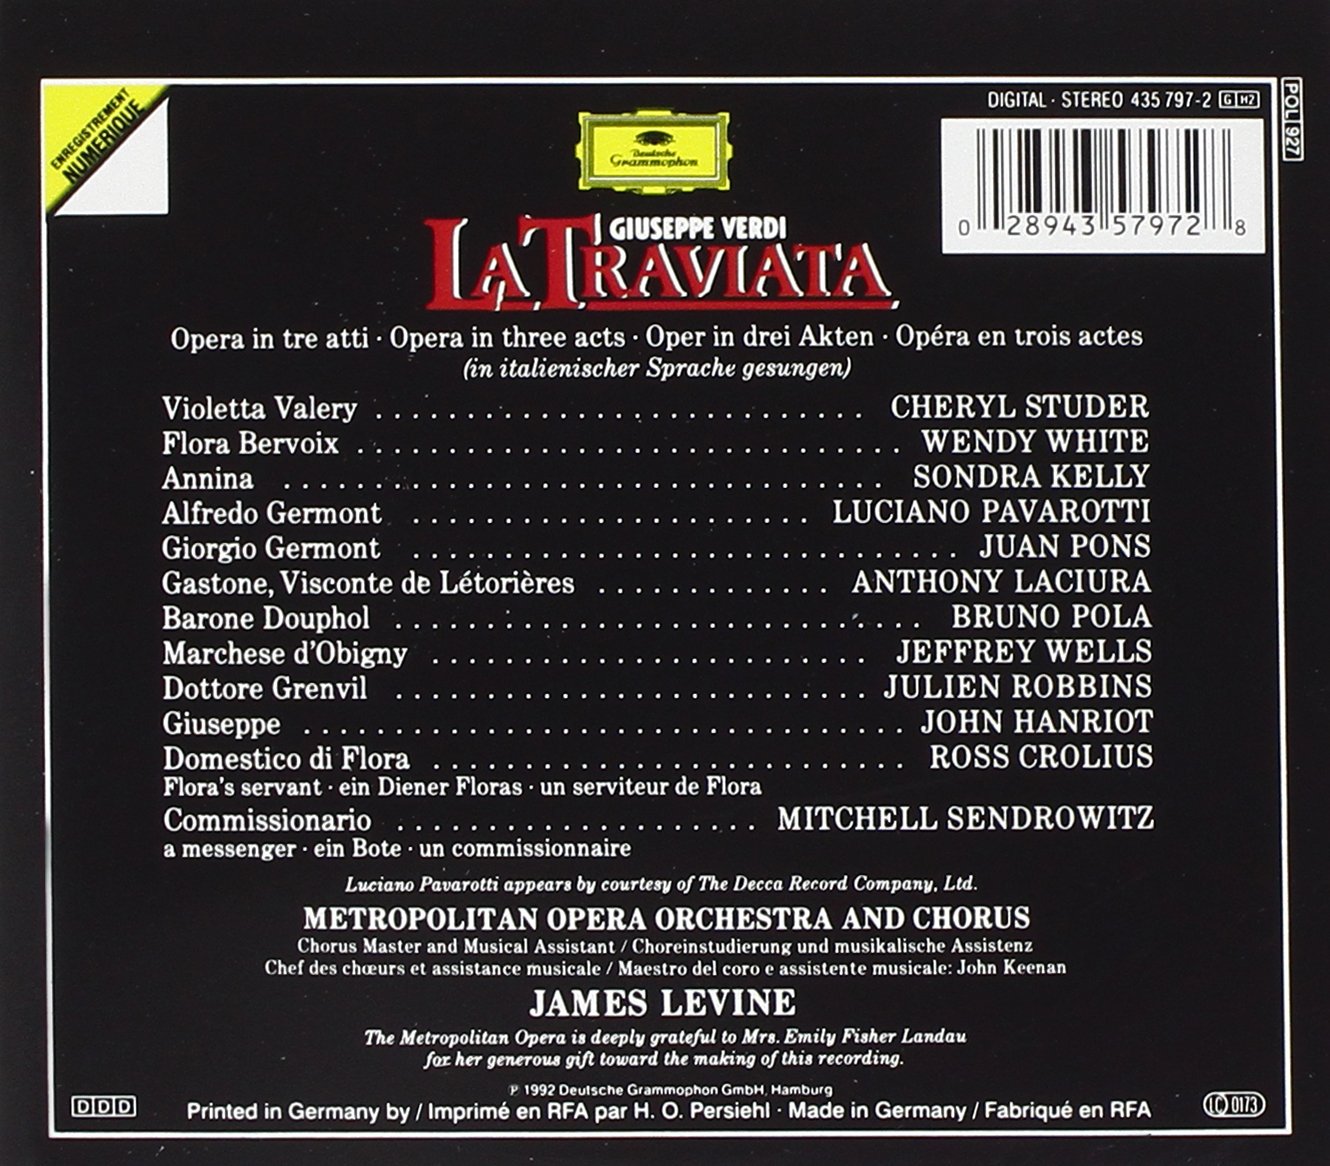 Luciano Pavarotti 베르디 : 라 트라비아타 (Verdi: La Traviata) 